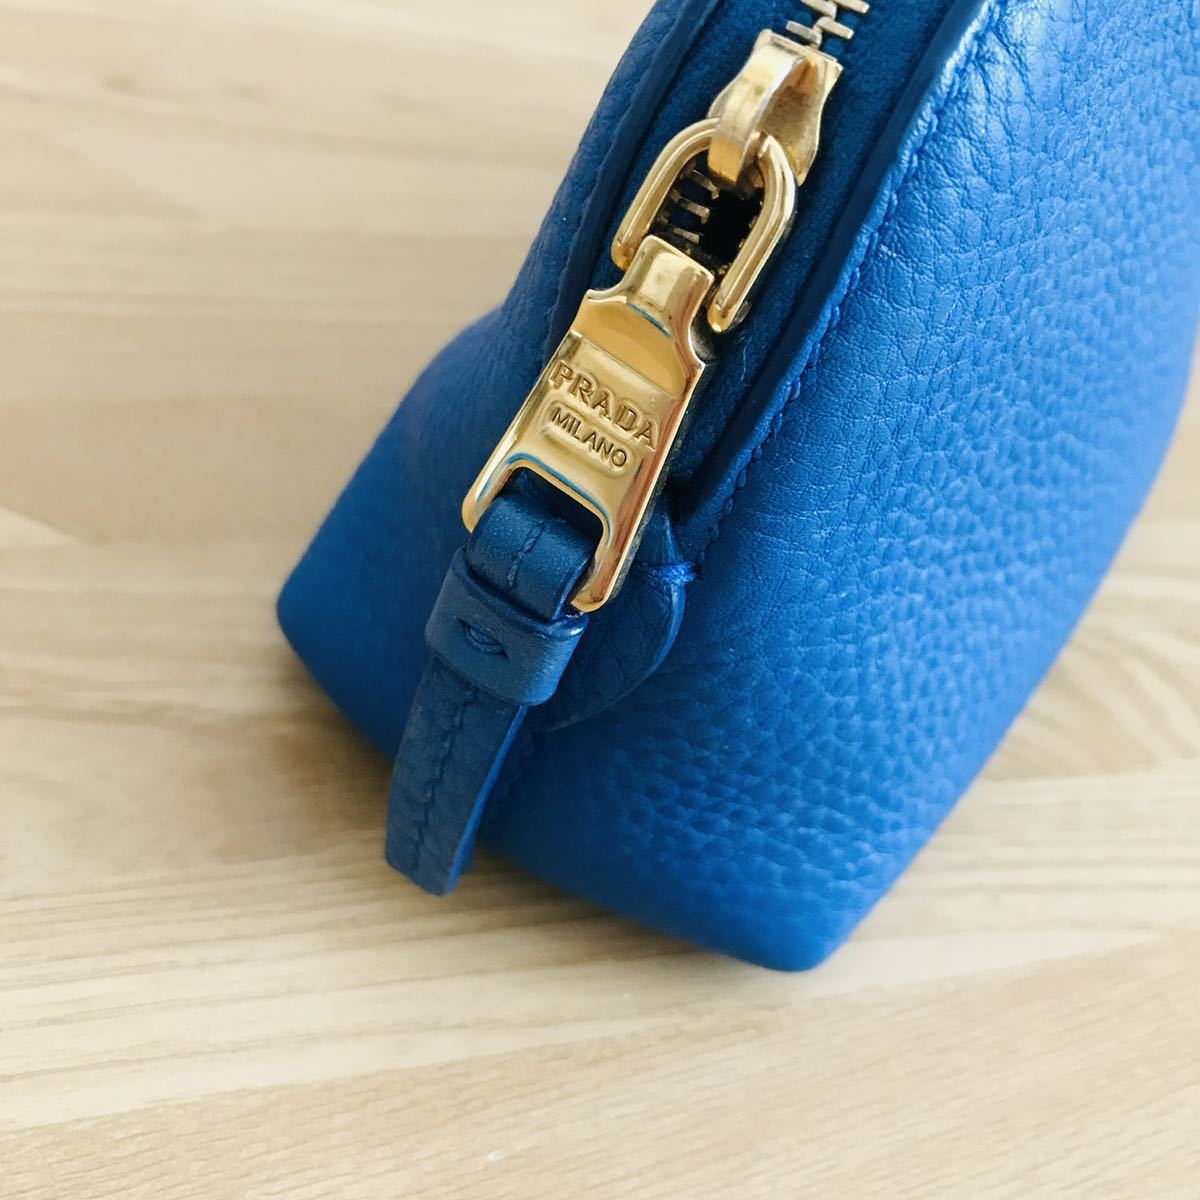  прекрасный товар PRADA Prada купол type кожа сумка голубой 